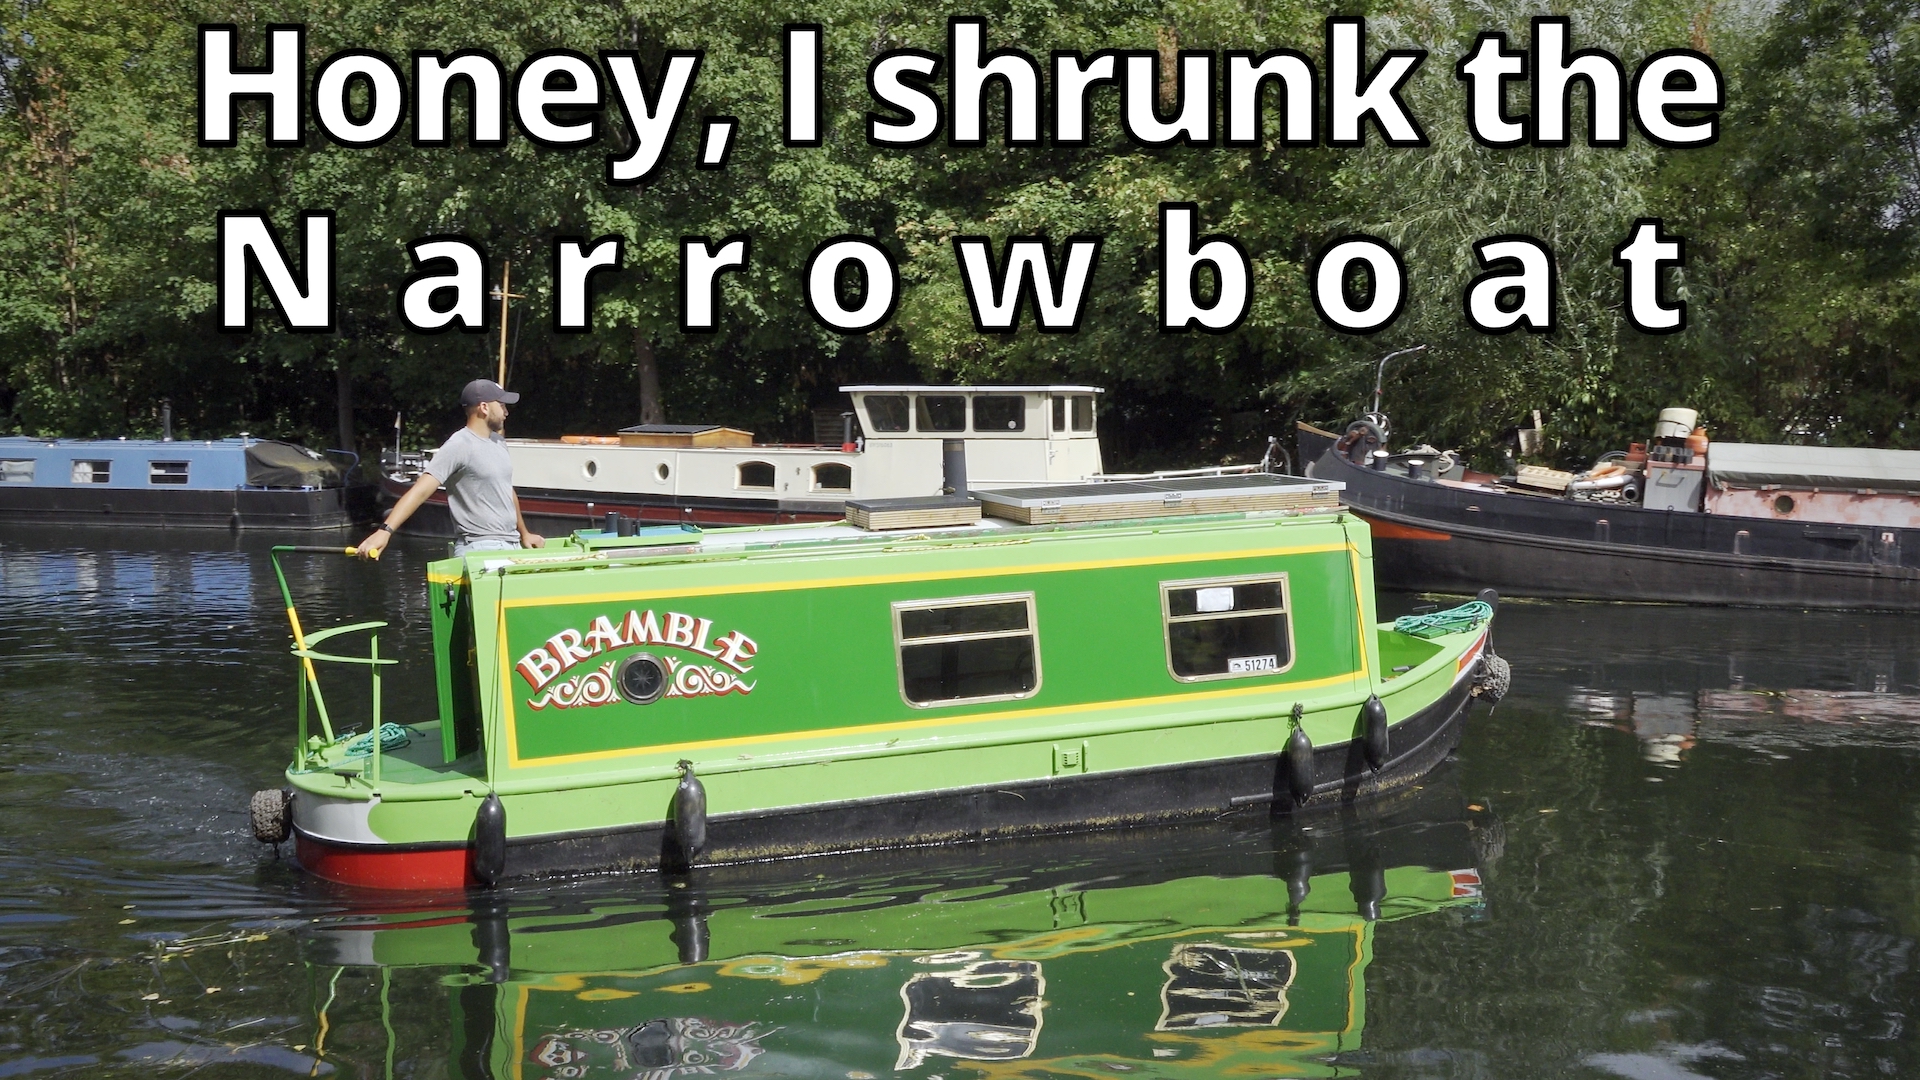 A small narrowboat